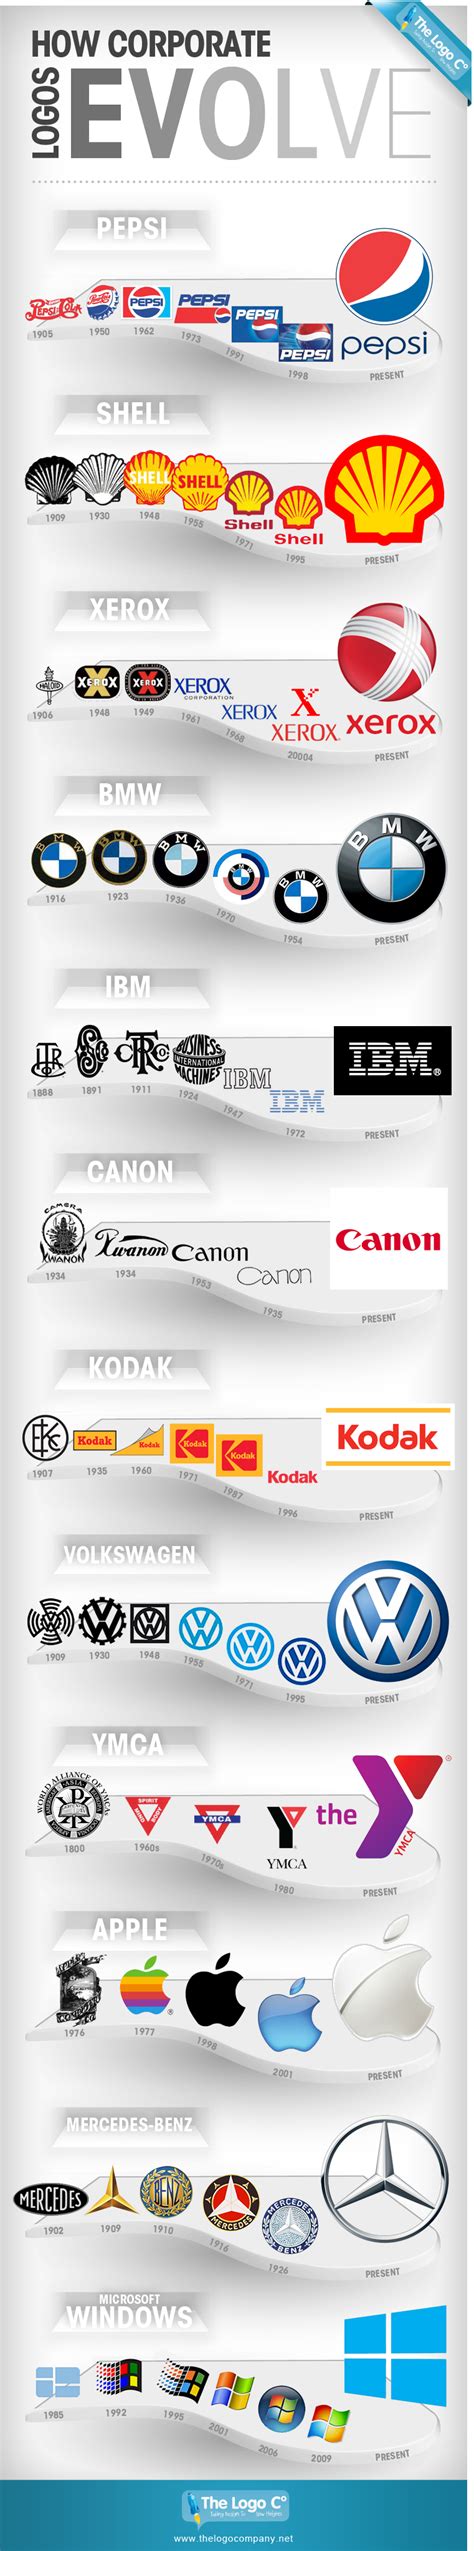 laplante diverses infographies sur les logos des marques